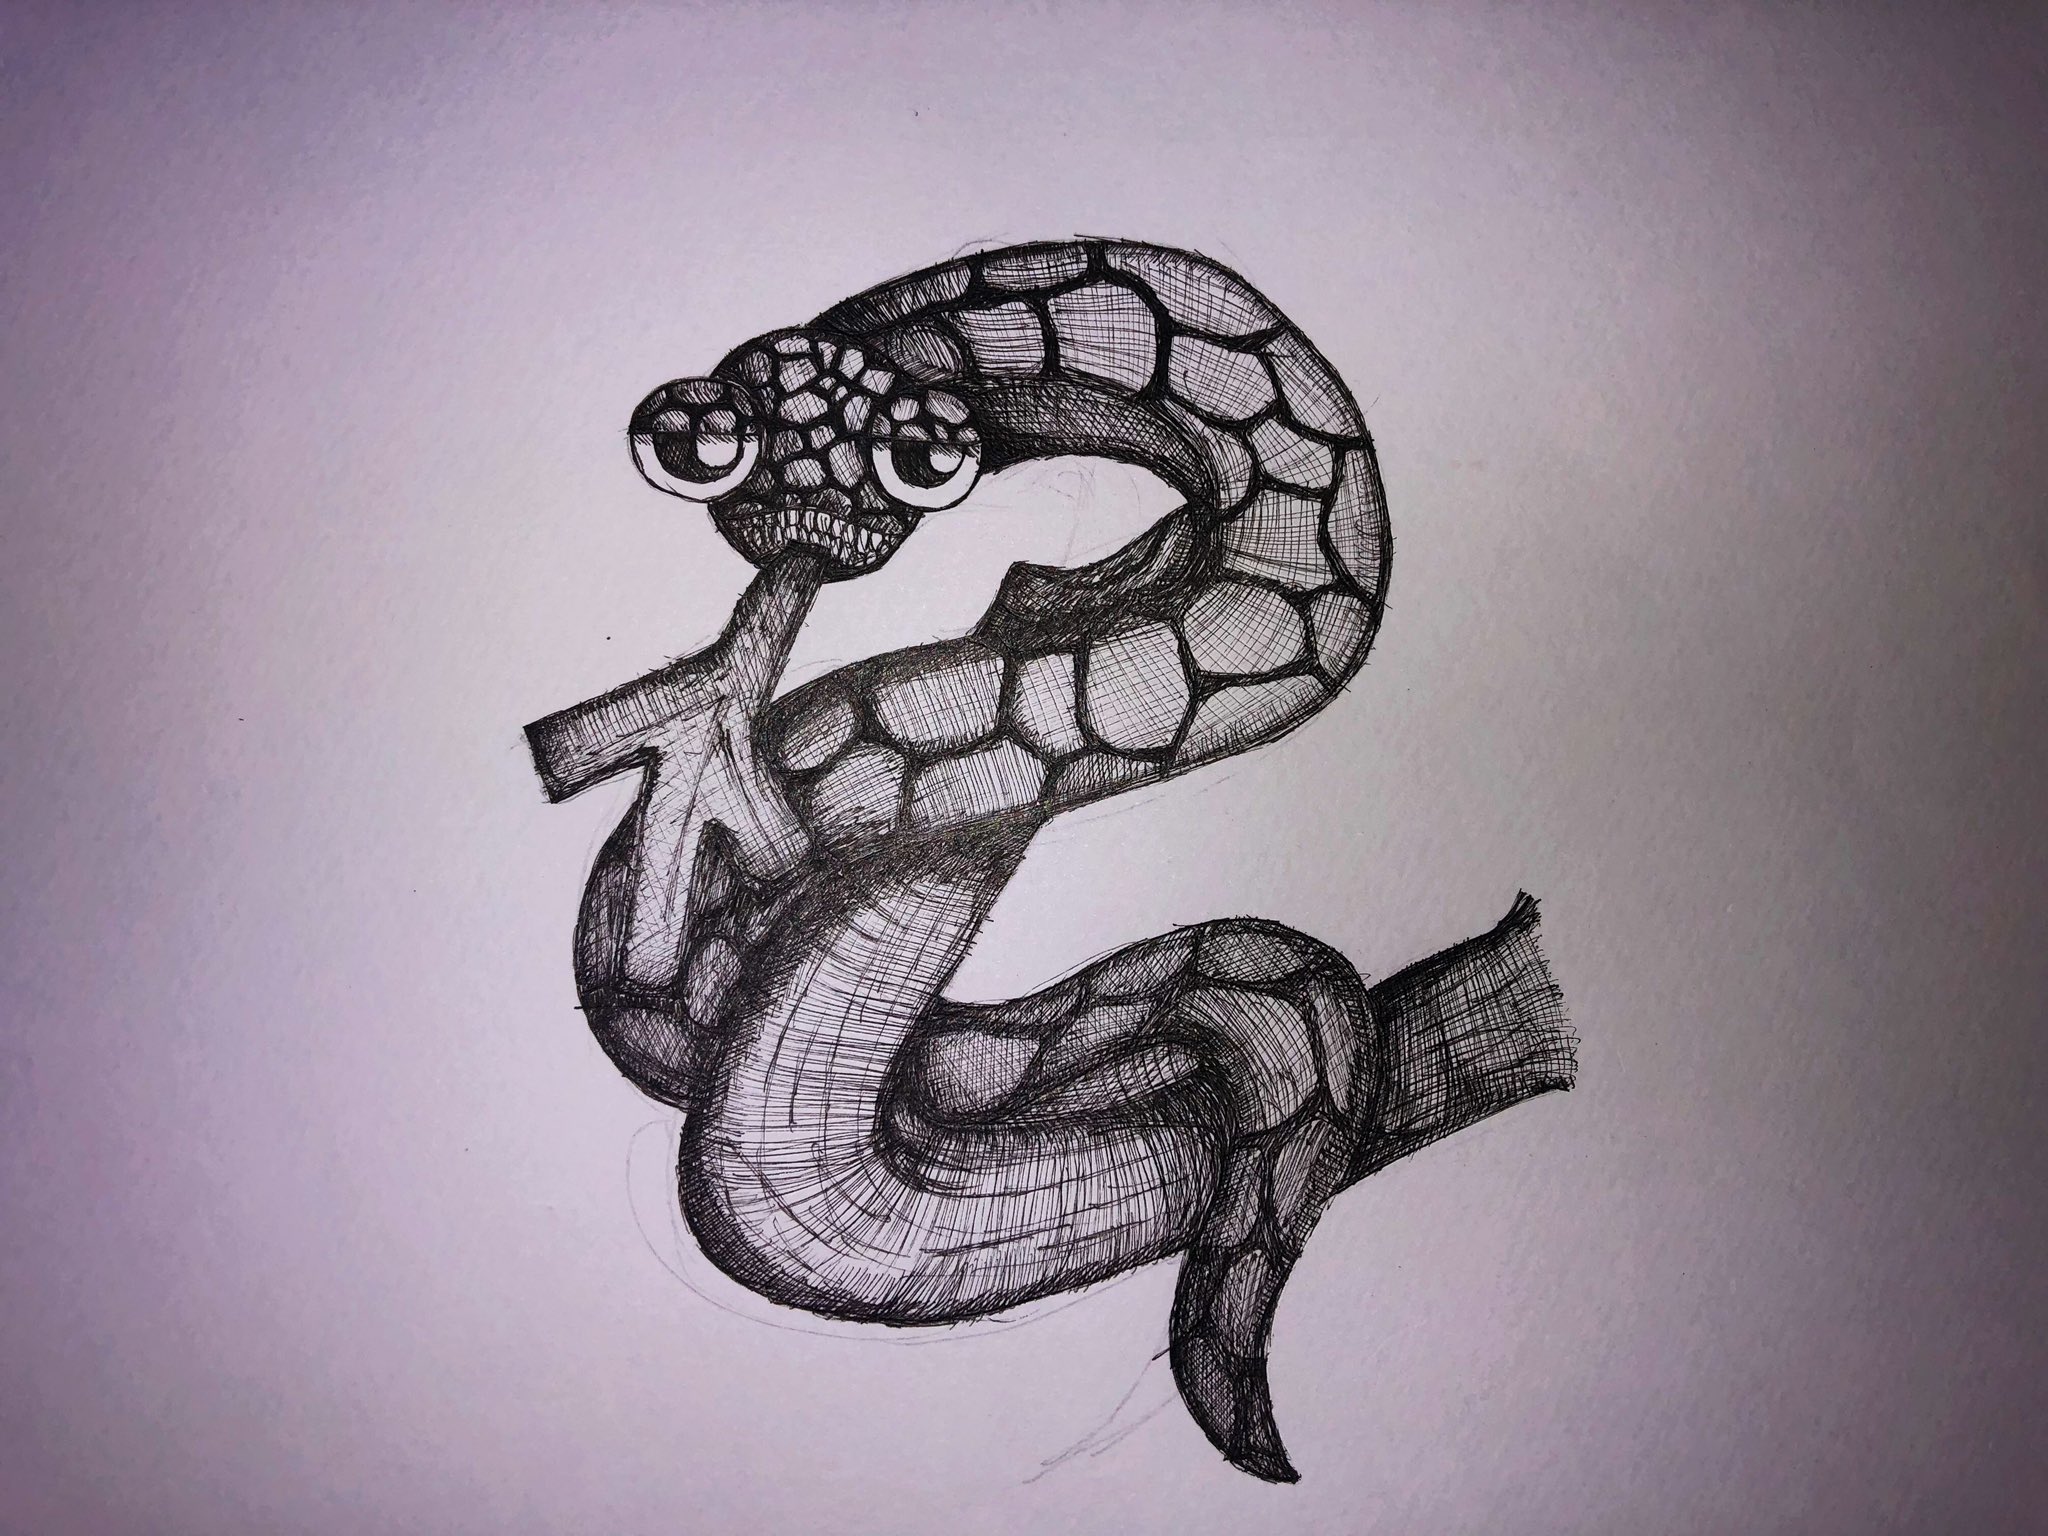 Nobe Ryota Gallery 作品紹介 タイトル 蛇の真実 画材 Pigma 時間 3時間 向日葵くんの世界観の蛇くんが リアルになりました ペン1本で描くのも悪くない この作品のメイキングはこちら T Co 0tv6z0pk51